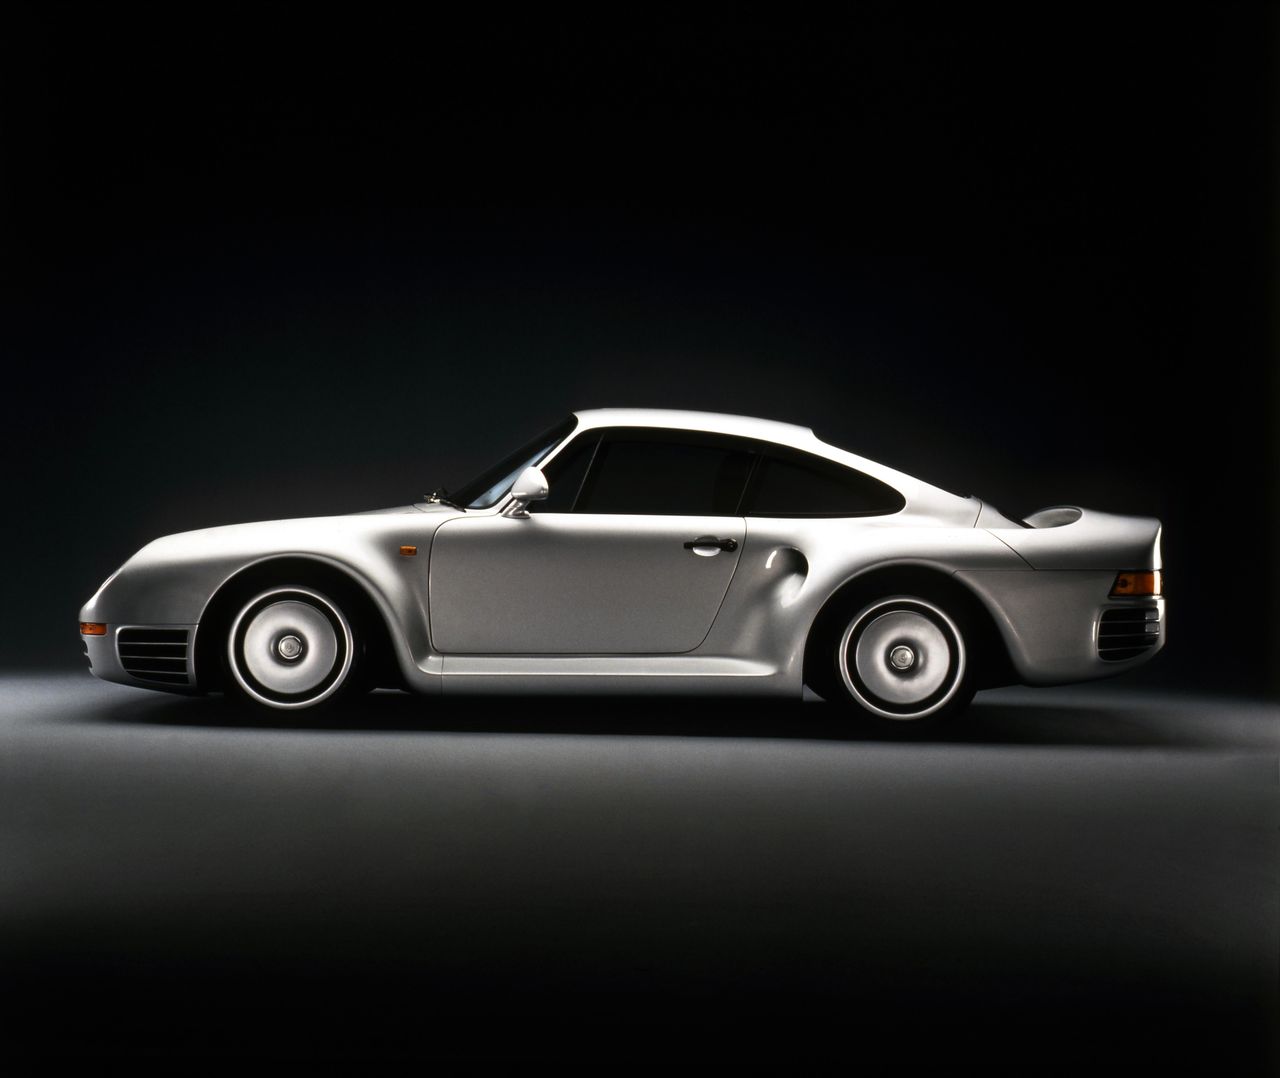 Premierę prototypowego B-grupowego 959 Porsche przeprowadziło na targach samochodowych we Frankfurcie w 1983 roku. Wersję drogową przedstawiono dwa lata później jako rocznik modelowy 1986. Produkcja nie ruszyła jednak natychmiast. Ze względu na opóźnienia, pierwsze 959 zjechały z linii dopiero po nieco ponad roku.